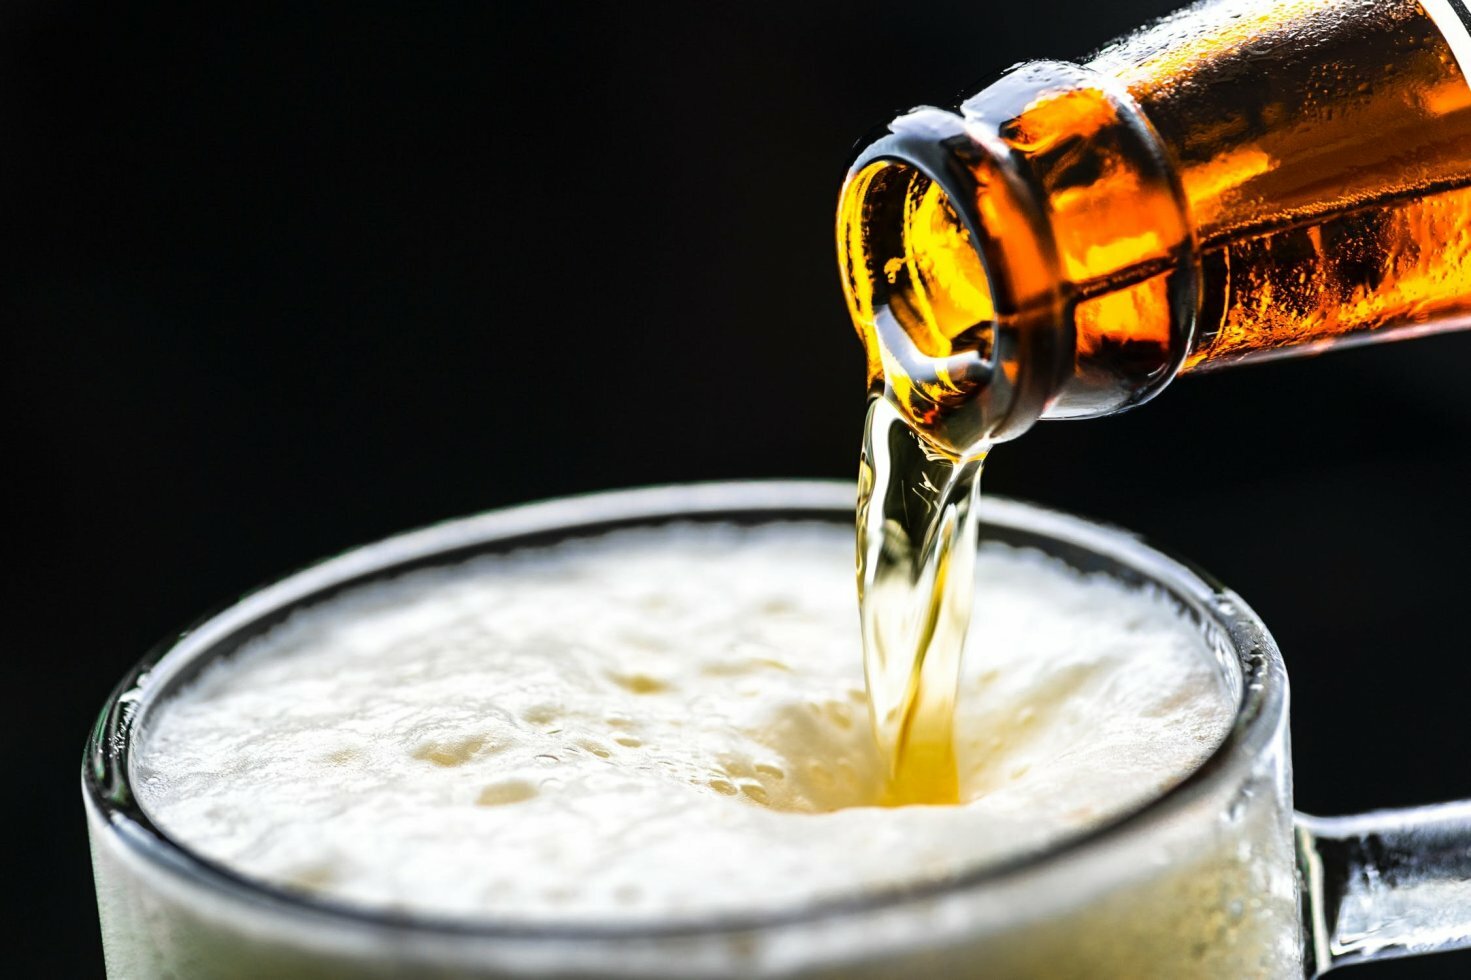 "Det smager lidt som øl": Mand drikker hver dag sit eget tis for at få mere energi 